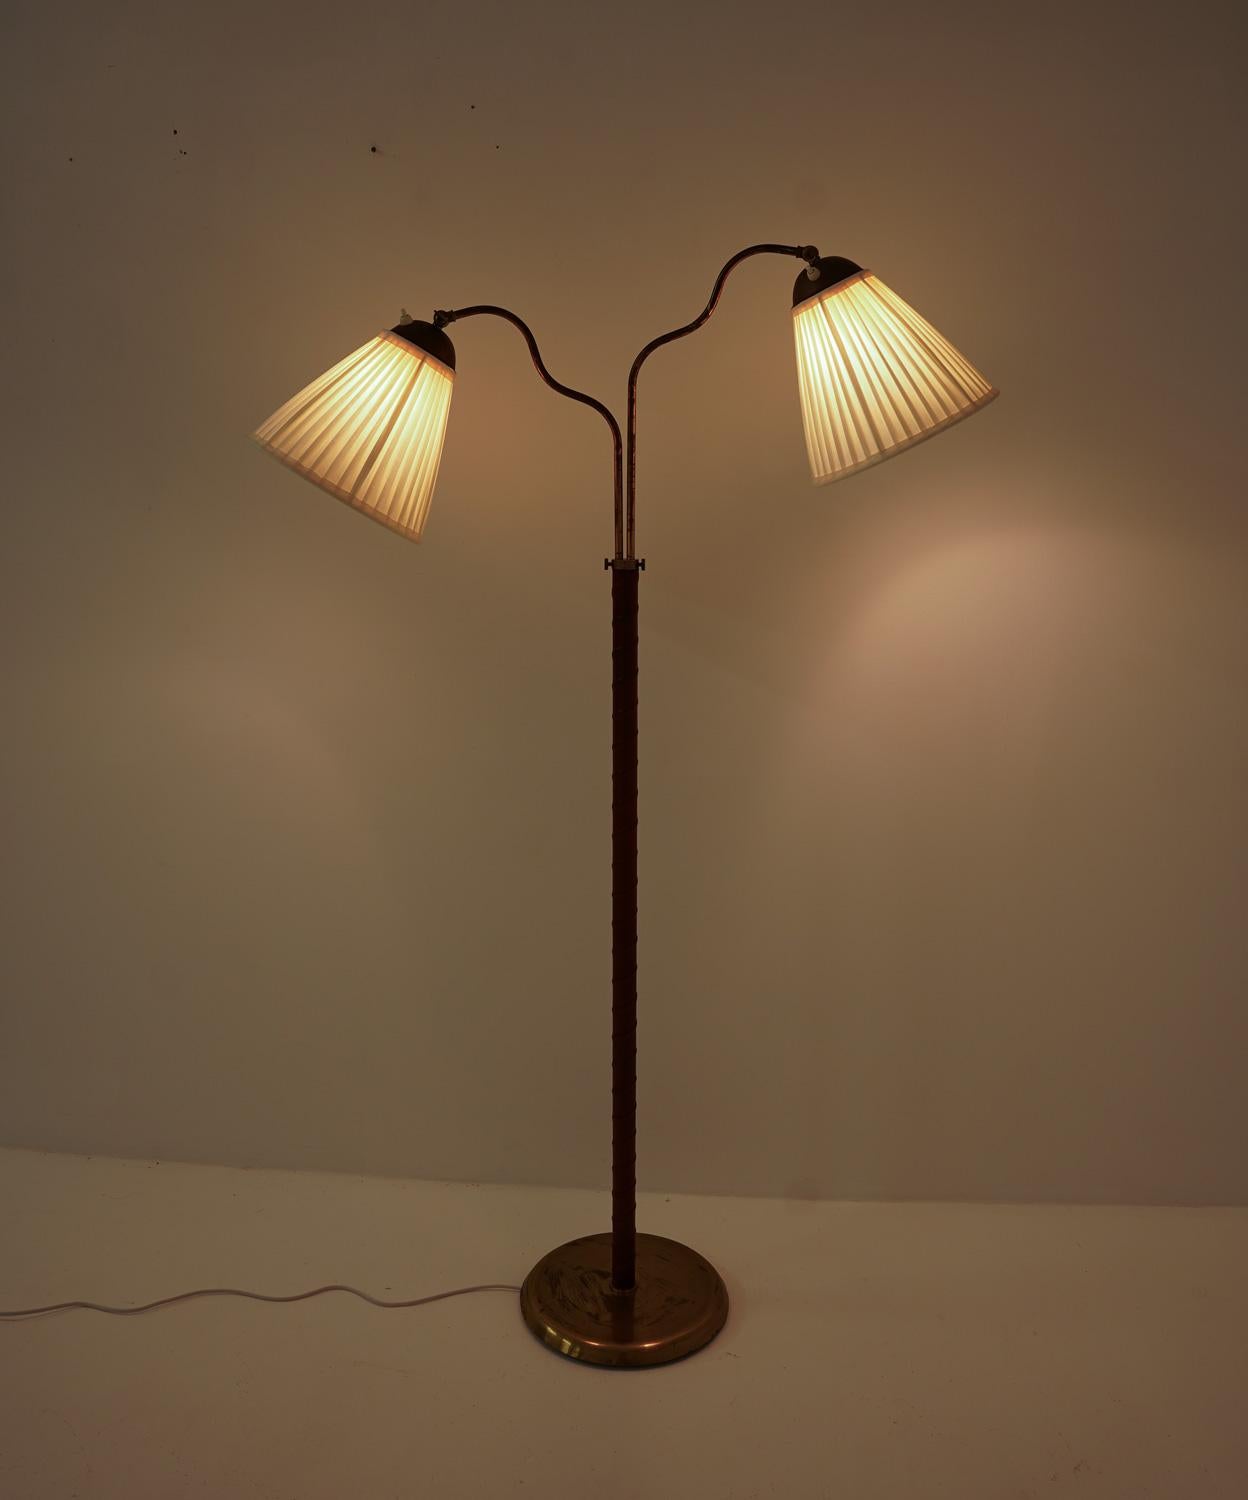 Il s'agit d'un joli lampadaire moderne suédois qui a été fabriqué en Suède dans les années 1940. La lampe est composée d'une base en fer recouverte de laiton et d'une tige en laiton avec une sangle en cuir. La tige supporte deux bras pivotants qui